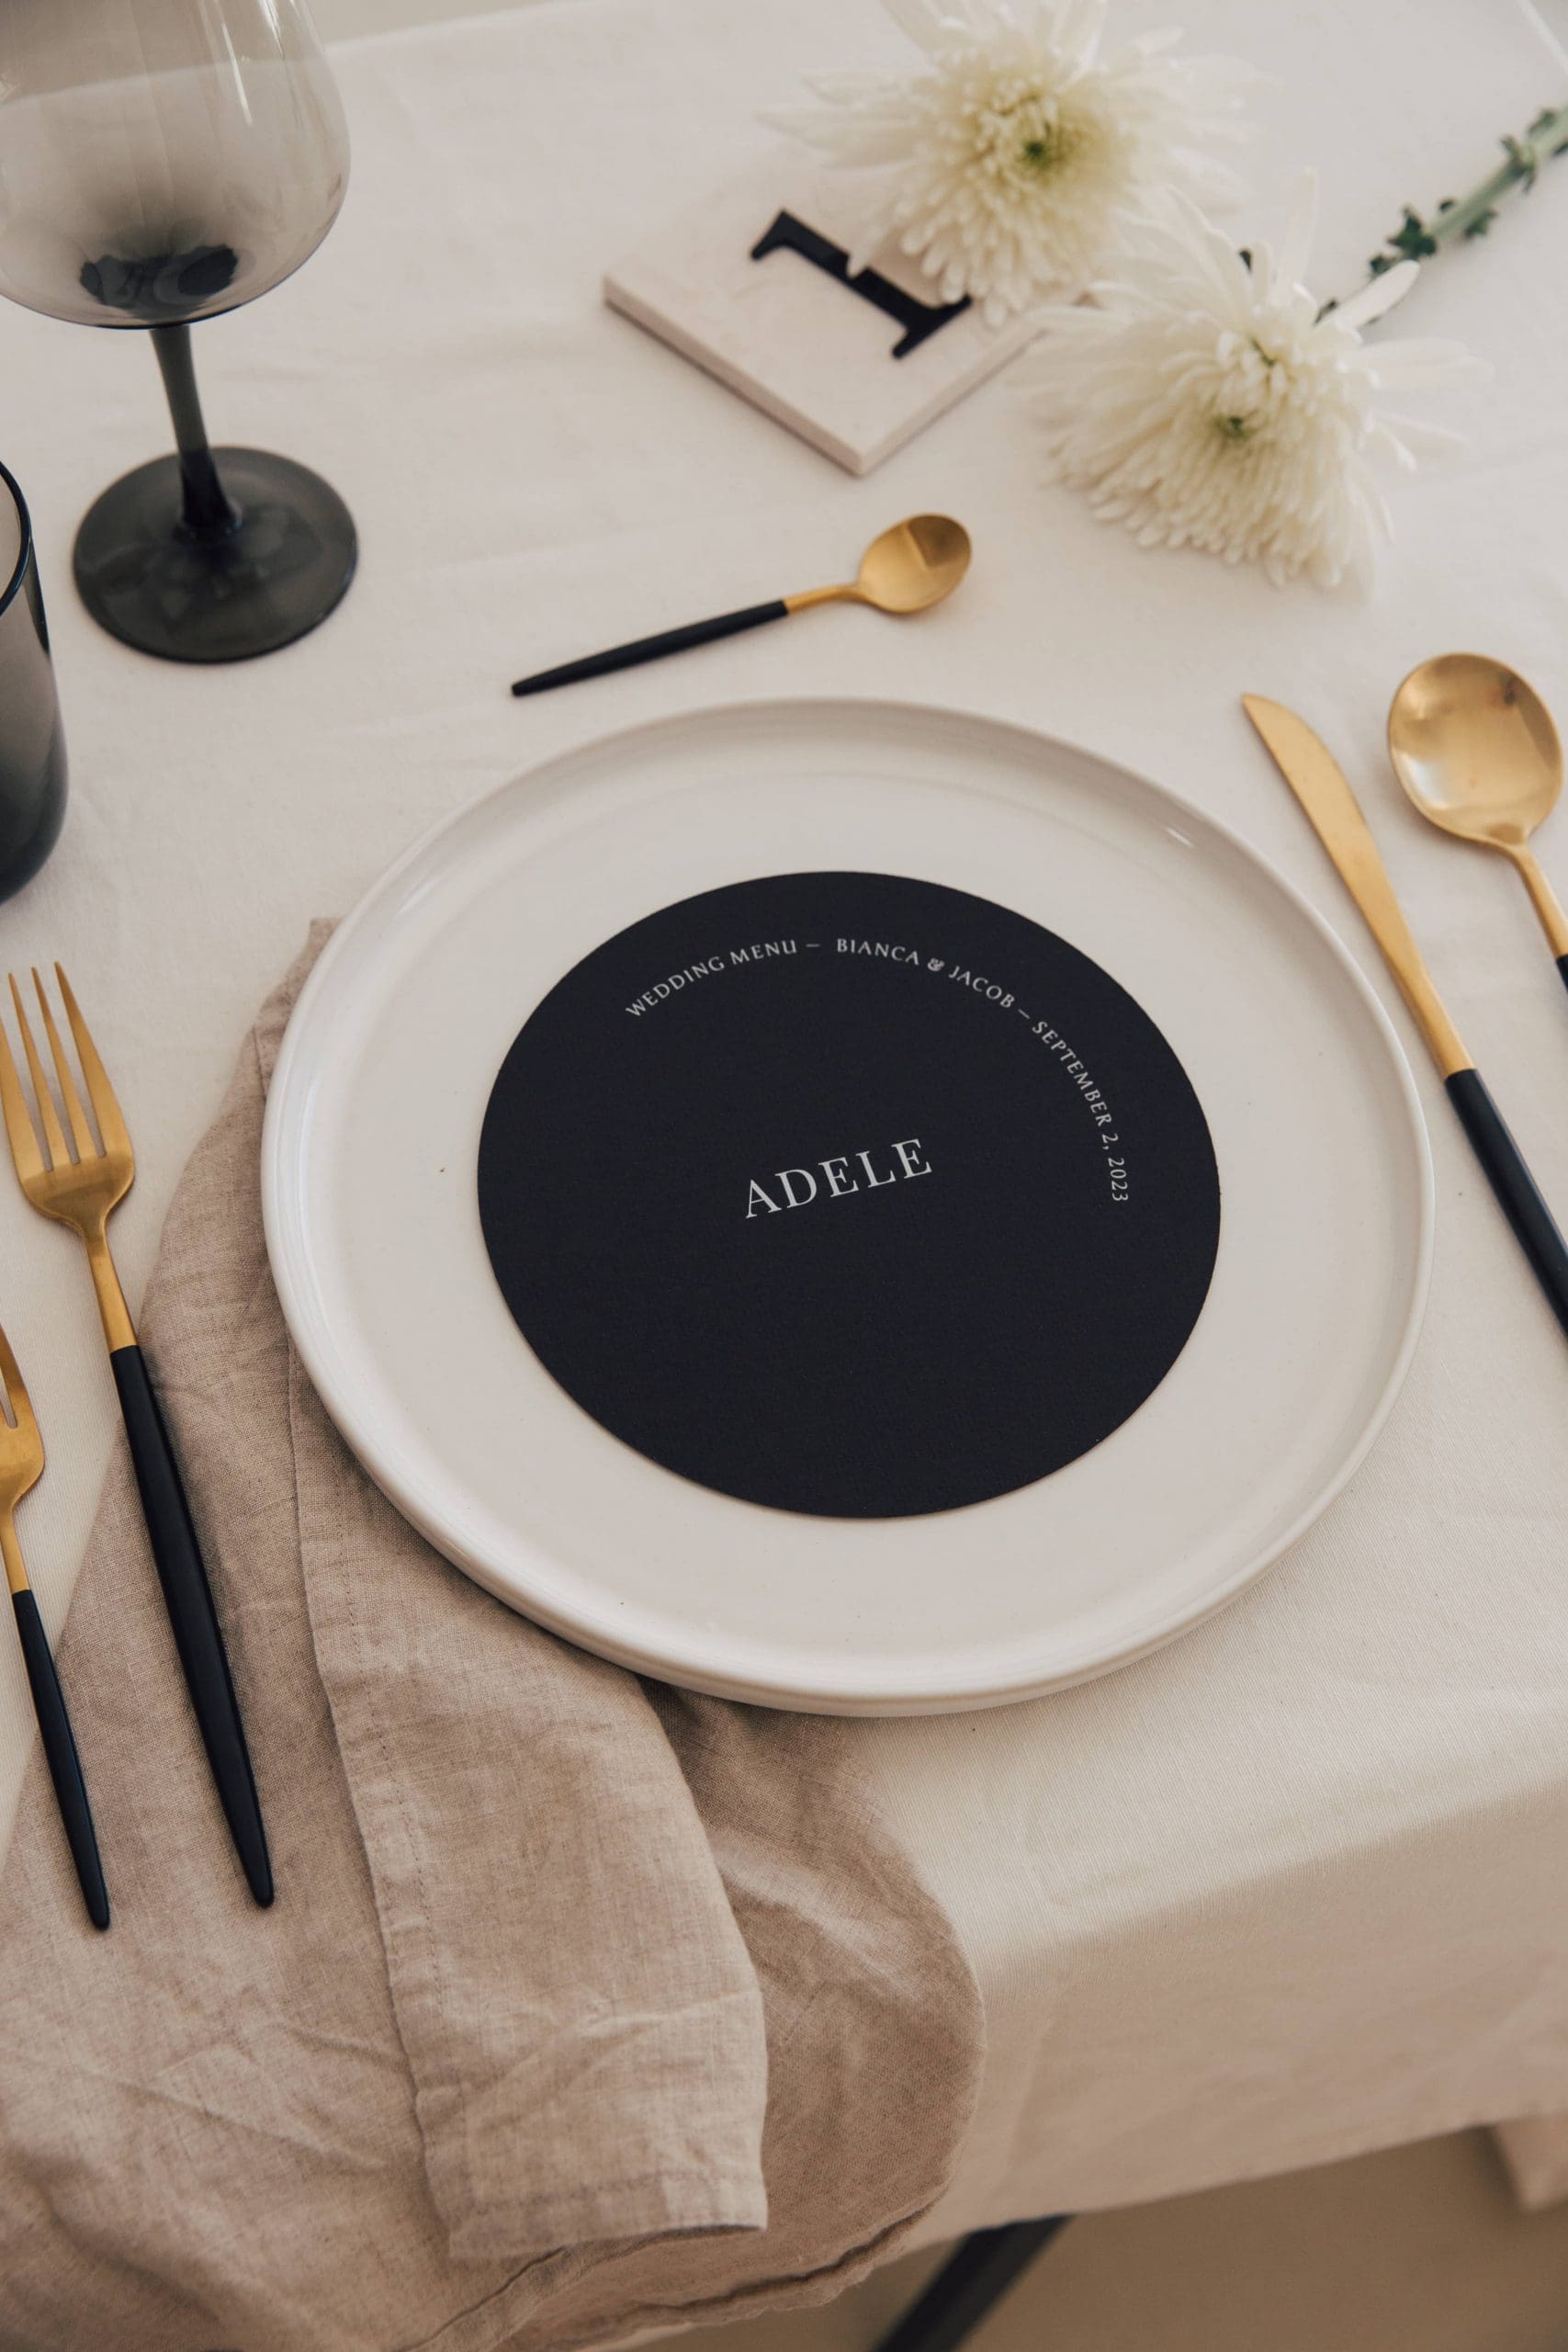 Minuta de boda redonda en color negro colocada sobre una mesa minimalista, destacando elegancia y simplicidad.